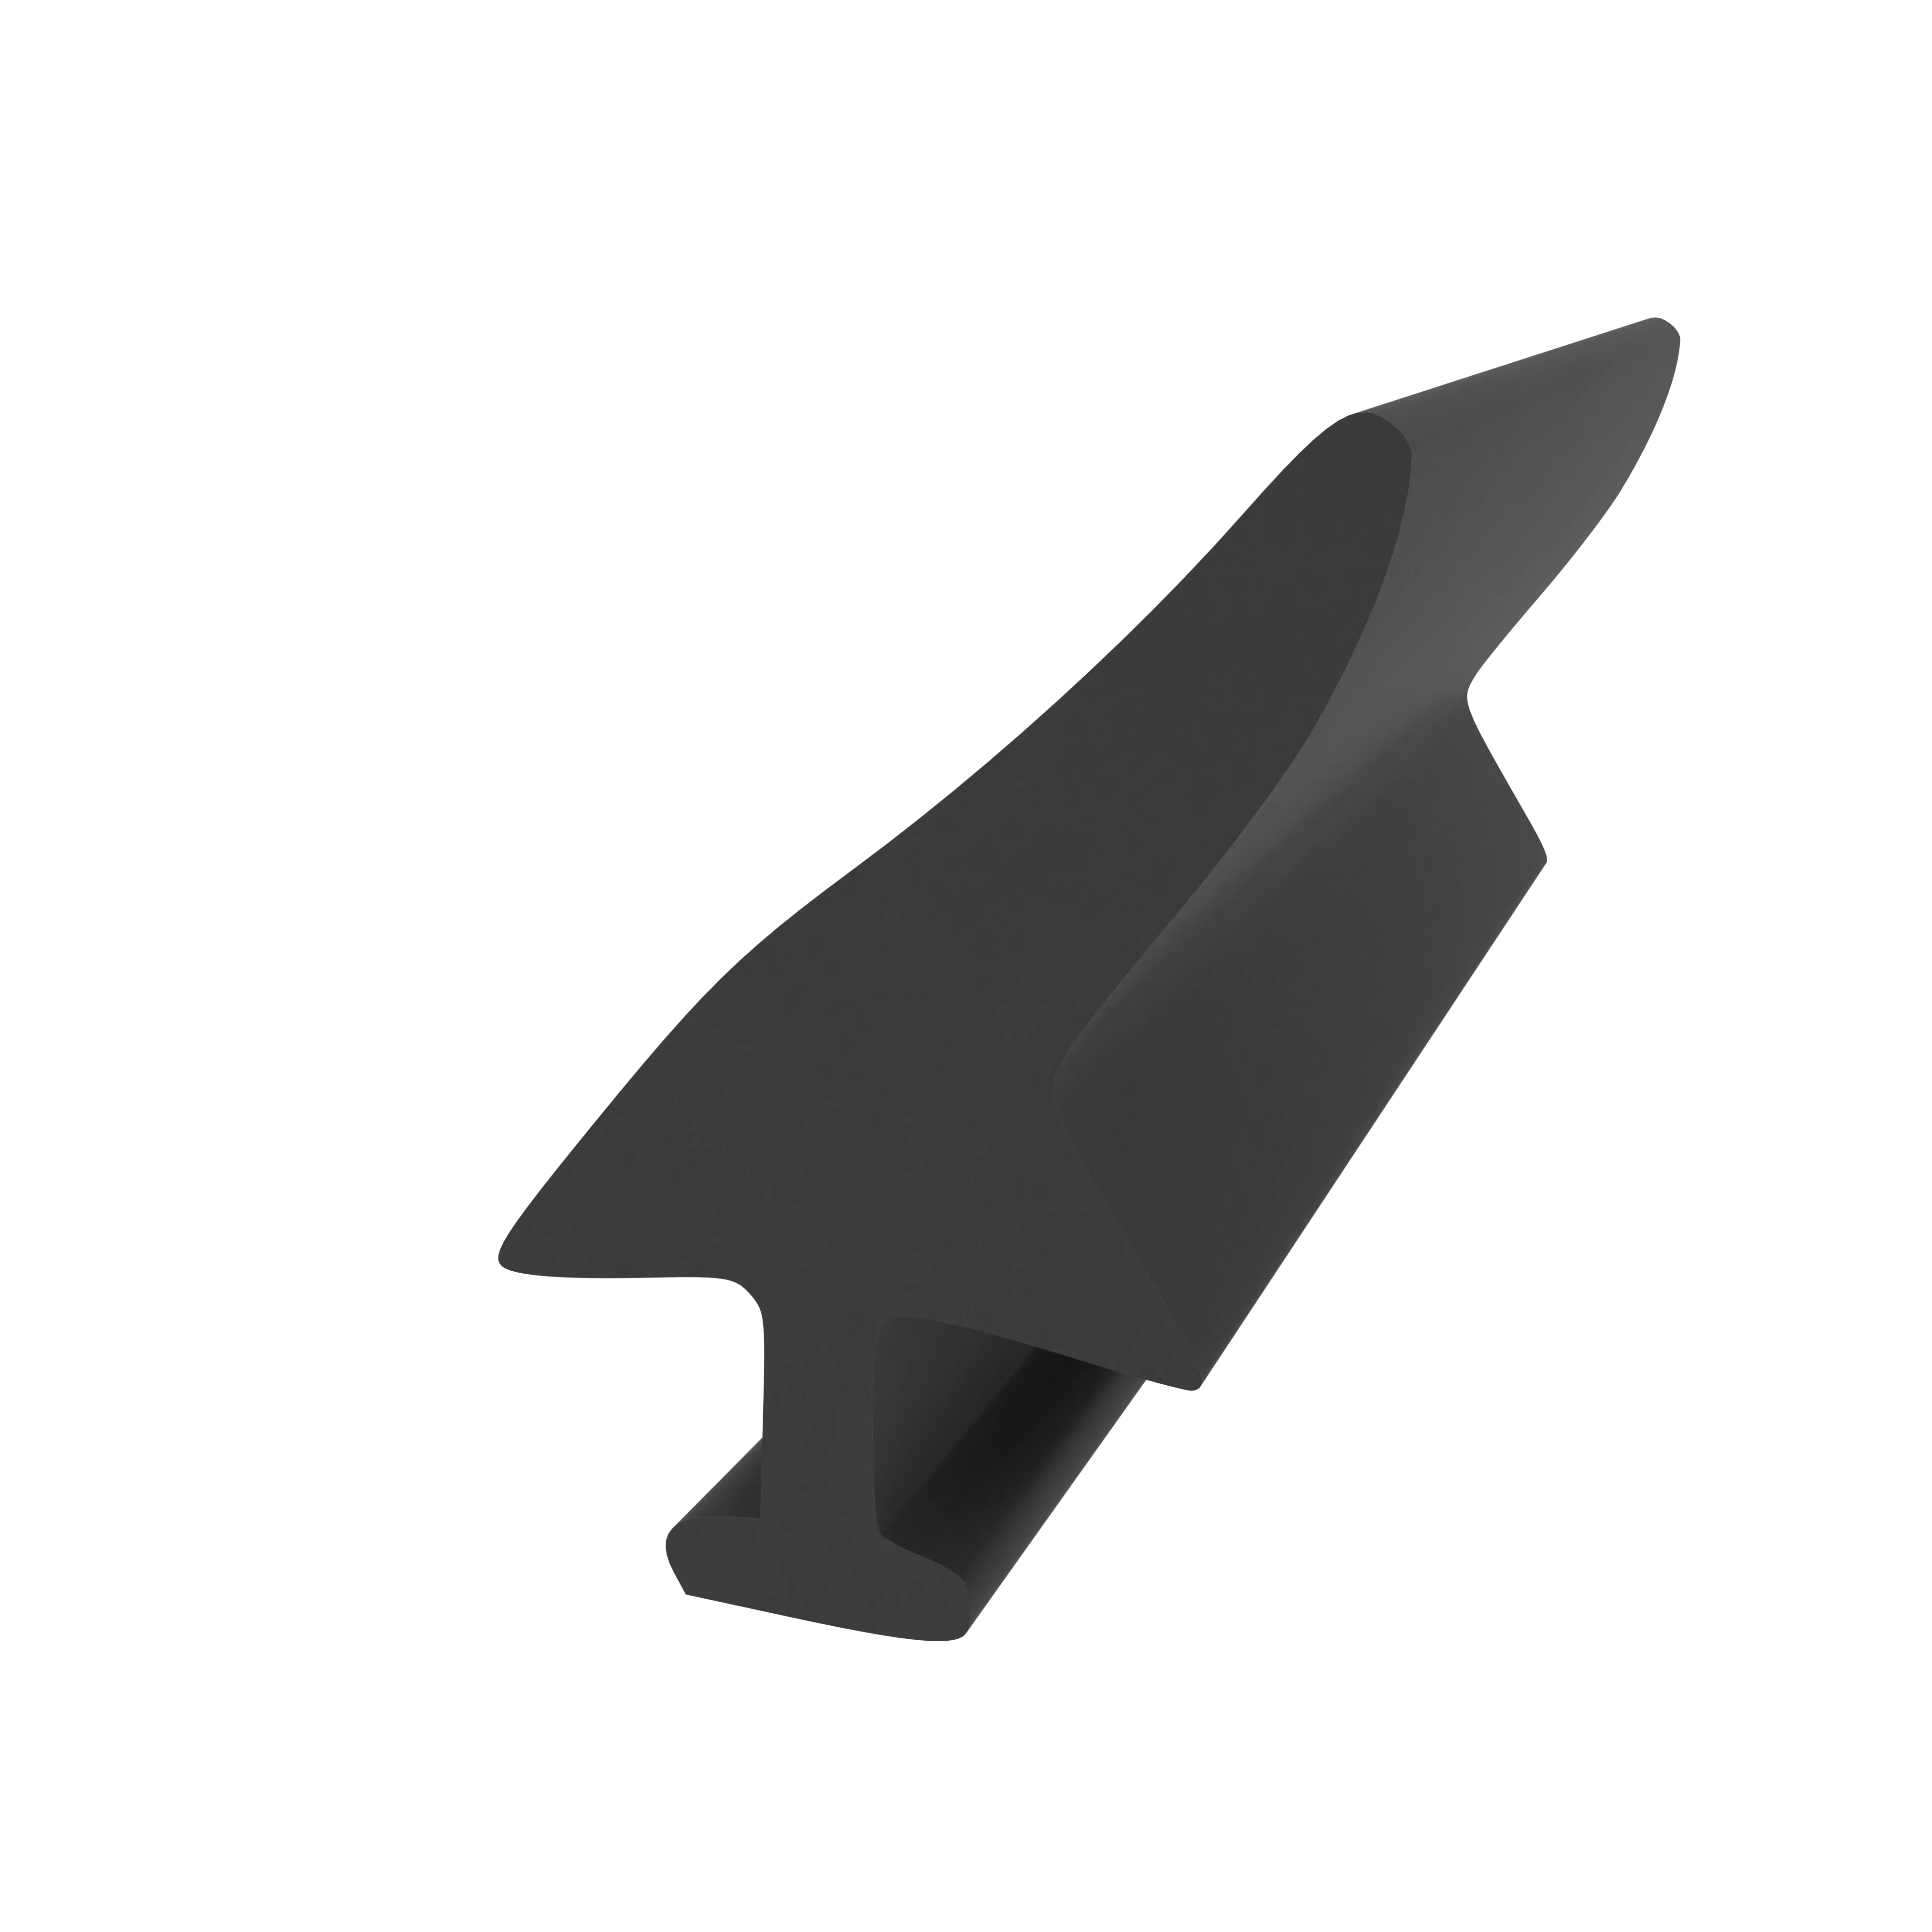 Mitteldichtung für Metall- und Alufenster | 15 mm Höhe | Farbe: schwarz